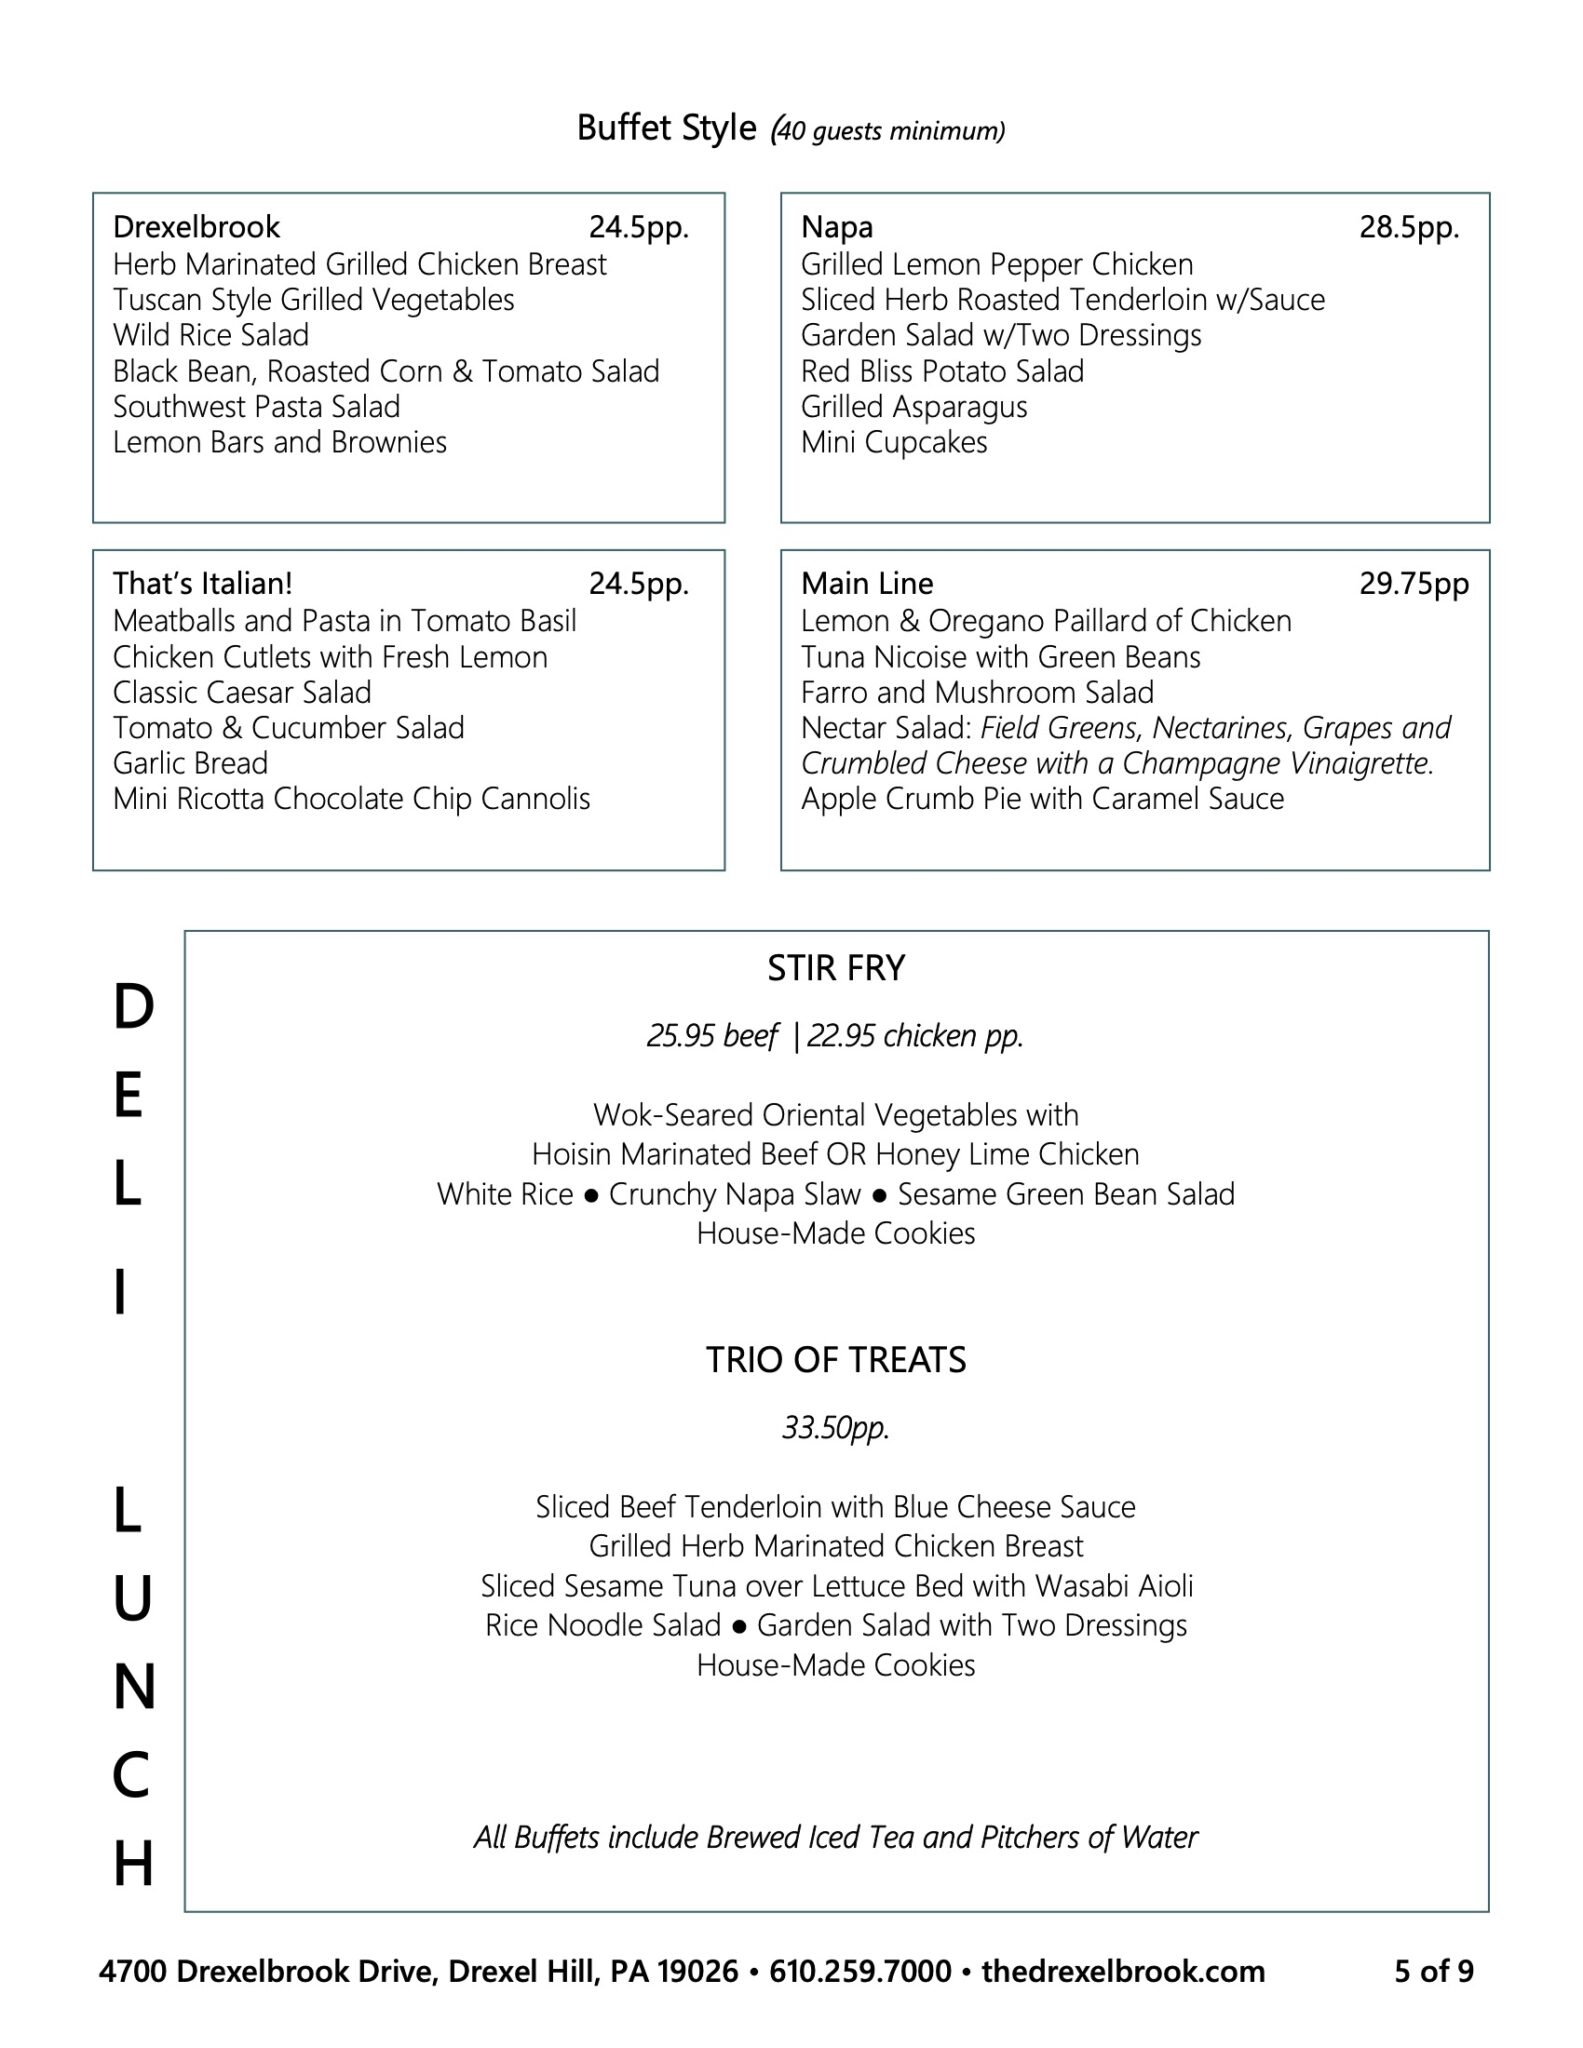 Drexelbrook buffet style menu options